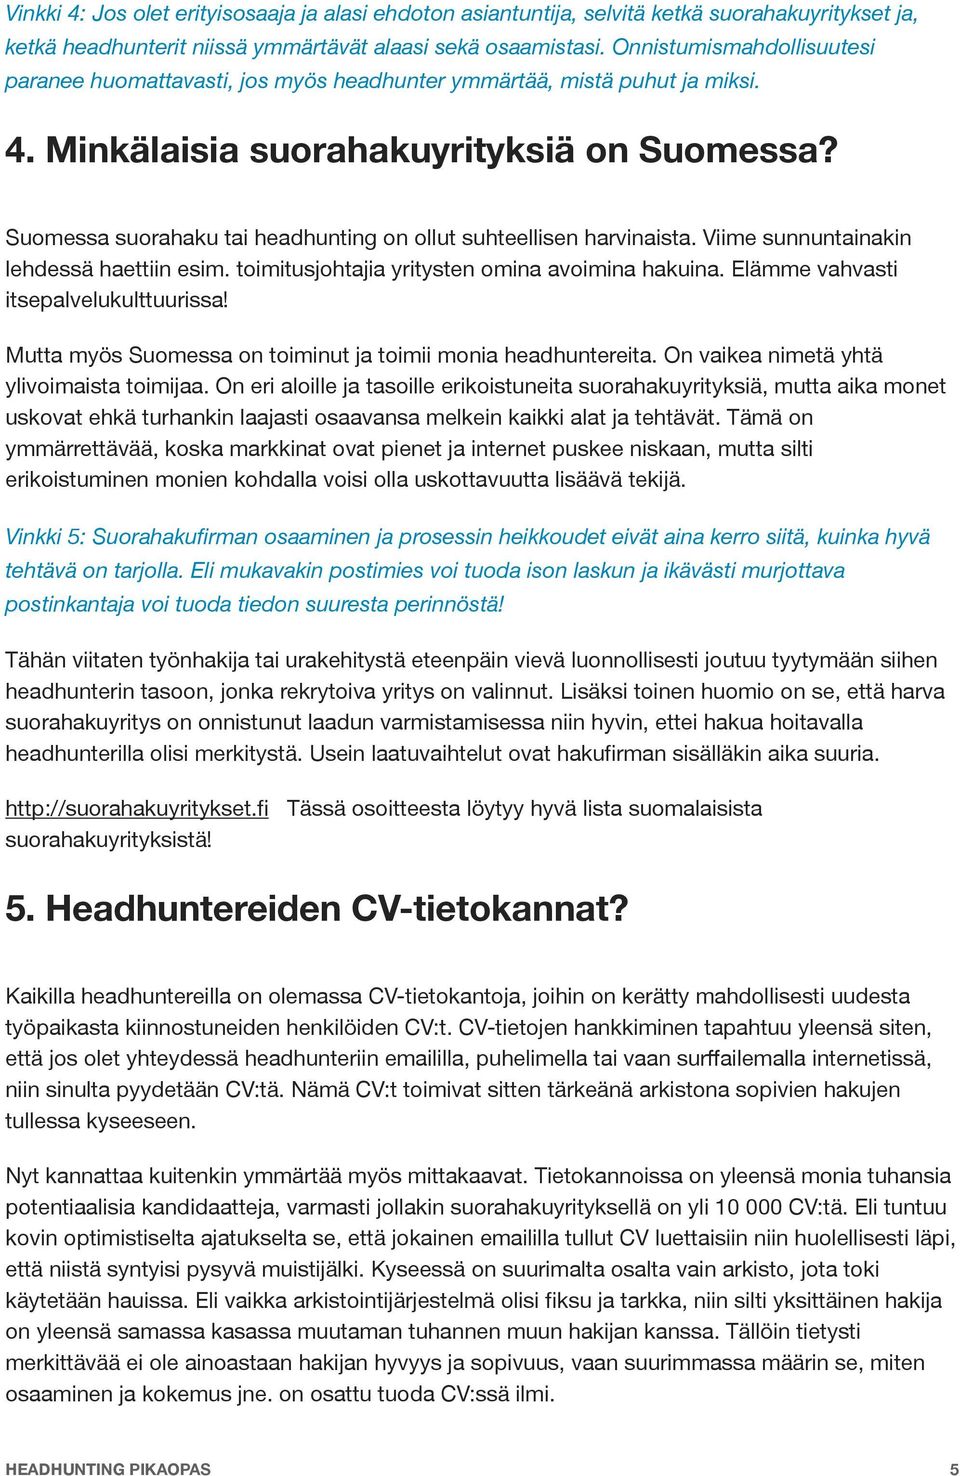 Suomessa suorahaku tai headhunting on ollut suhteellisen harvinaista. Viime sunnuntainakin lehdessä haettiin esim. toimitusjohtajia yritysten omina avoimina hakuina.